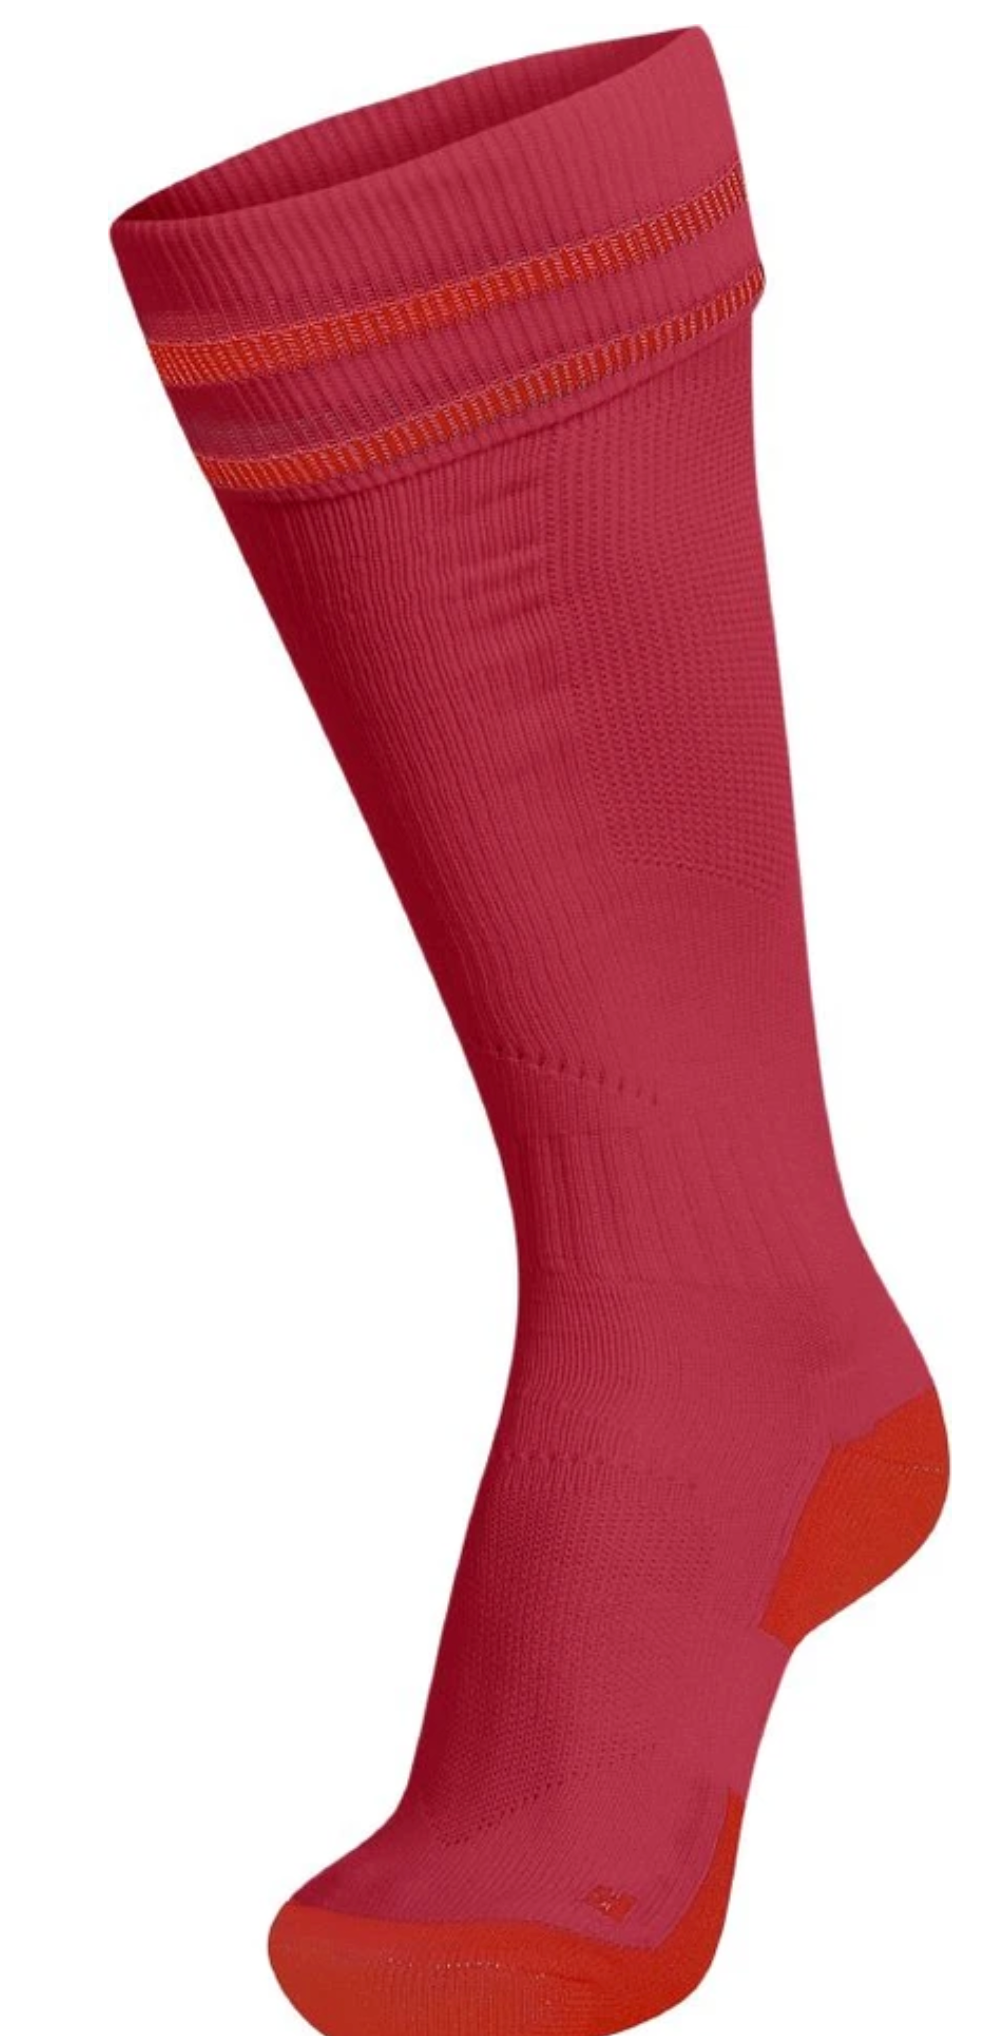 Hummel Element Soccer Socks-Chili Pepper/Fire Red